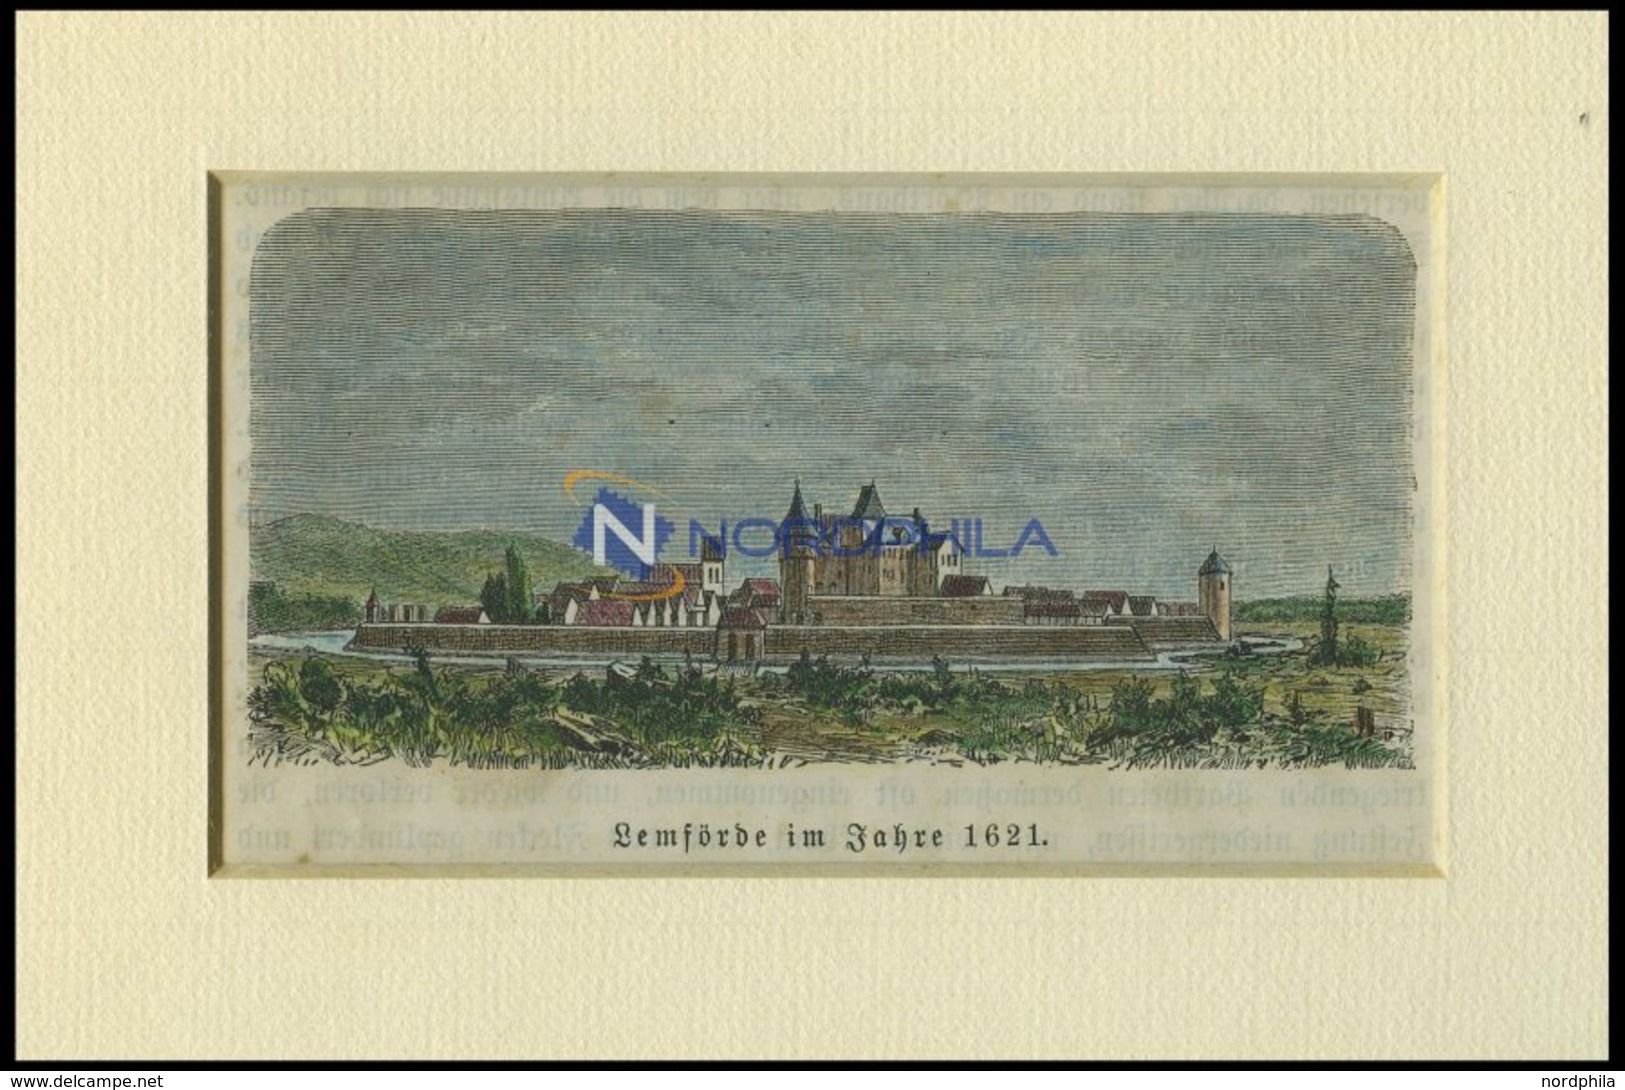 LEMFÖRDE, Gesamtansicht, Kolorierter Holzstich Auf Vaterländische Geschichten Von Görges 1843/4 - Lithographien